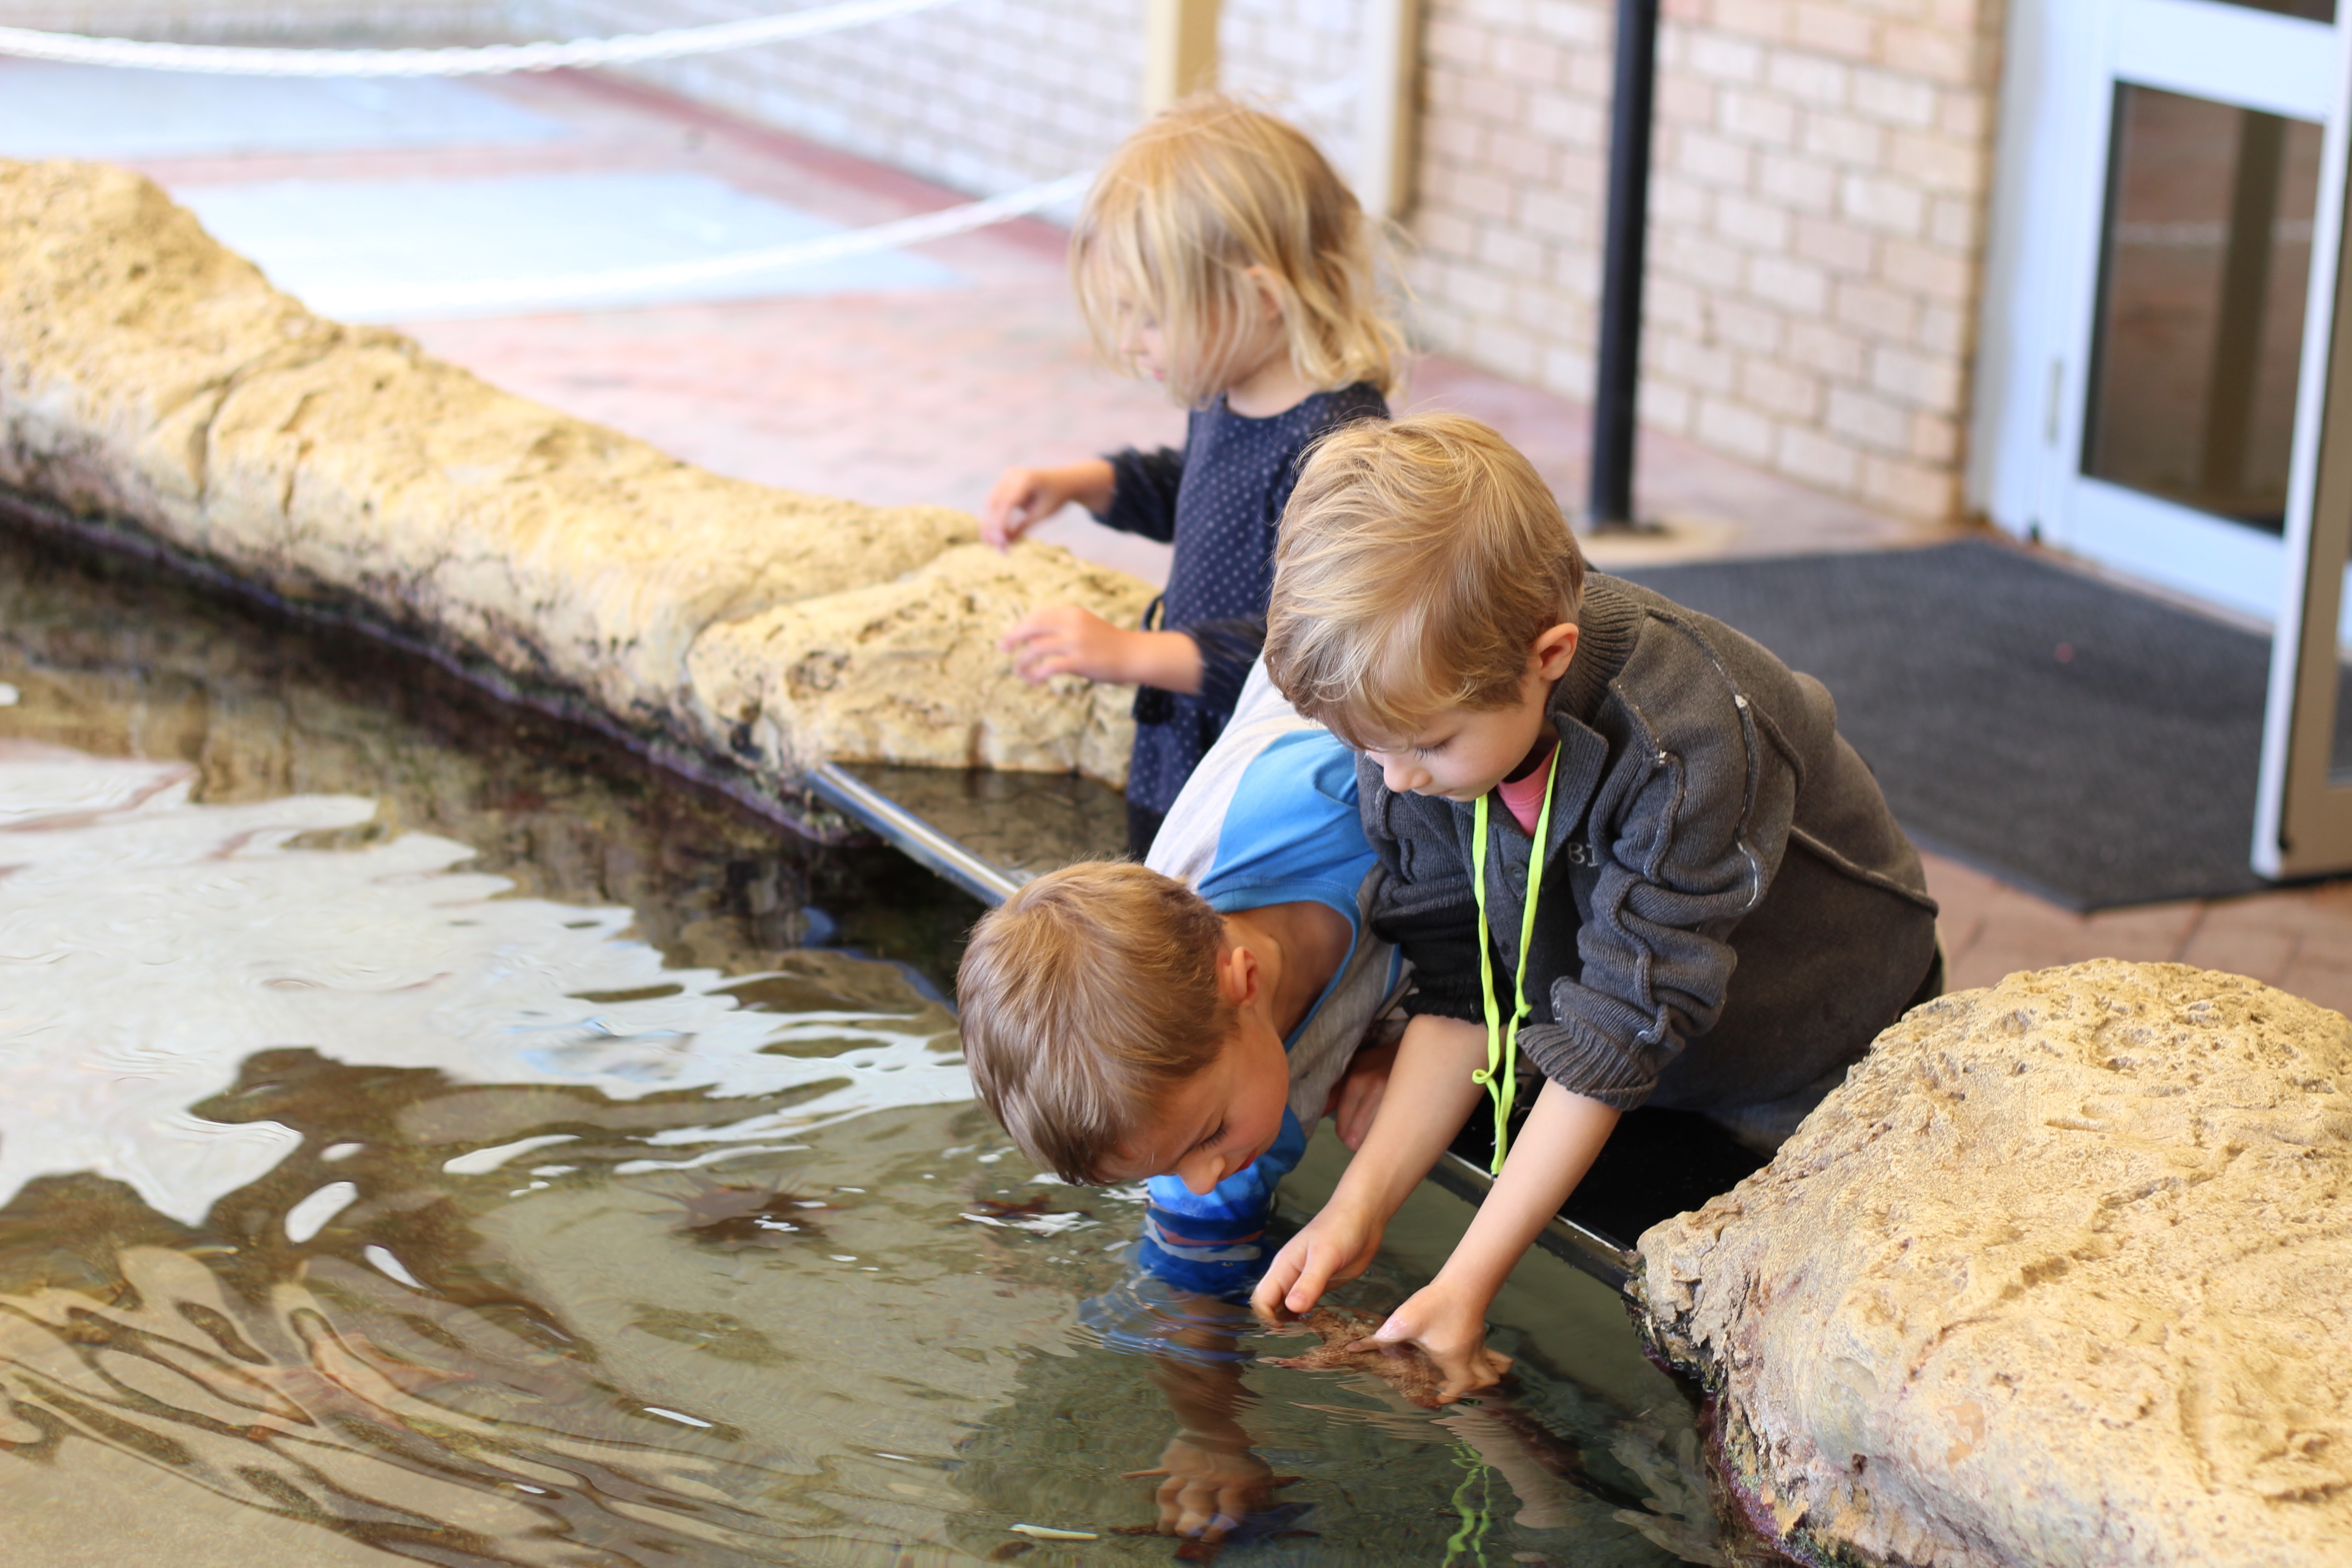 AQWA, The Aquarium of Western Australia